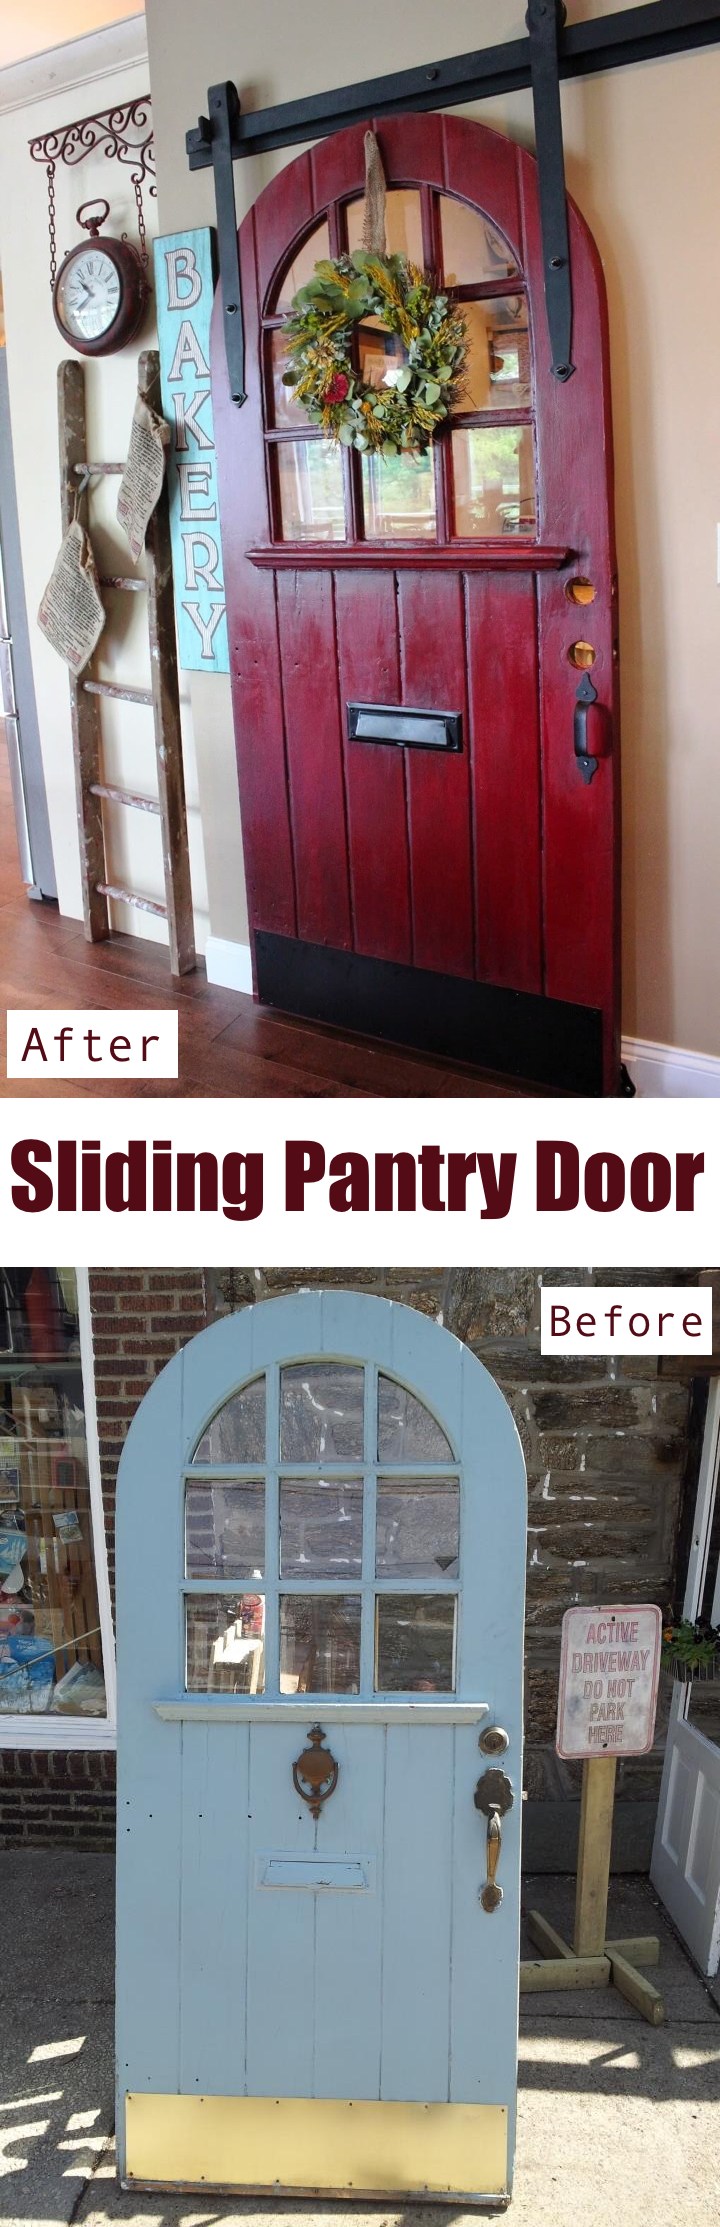 Sliding Pantry Door